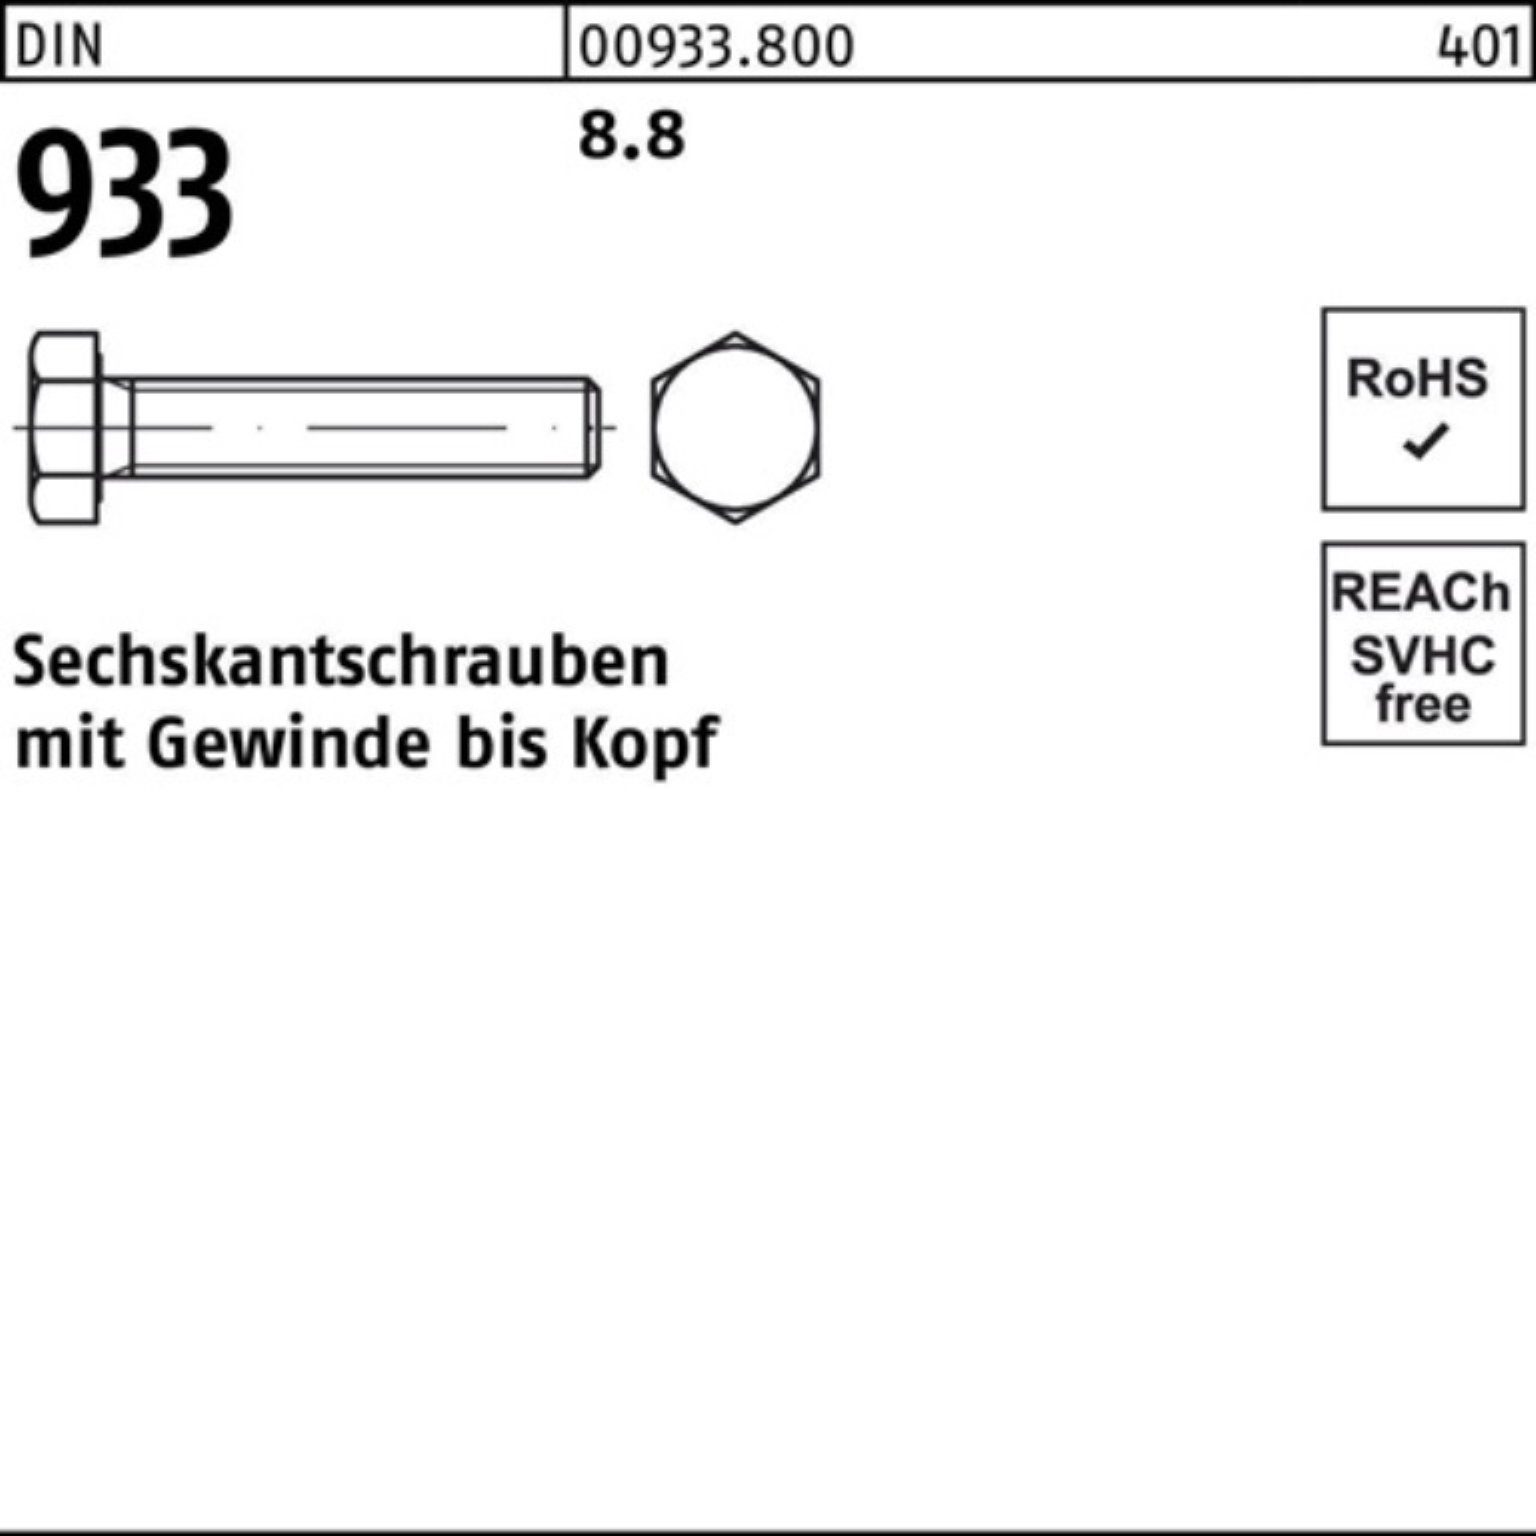 Pack M8x Reyher 8.8 DIN DIN Stück 200er Sechskantschraube 75 200 VG 933 933 Sechskantschraube